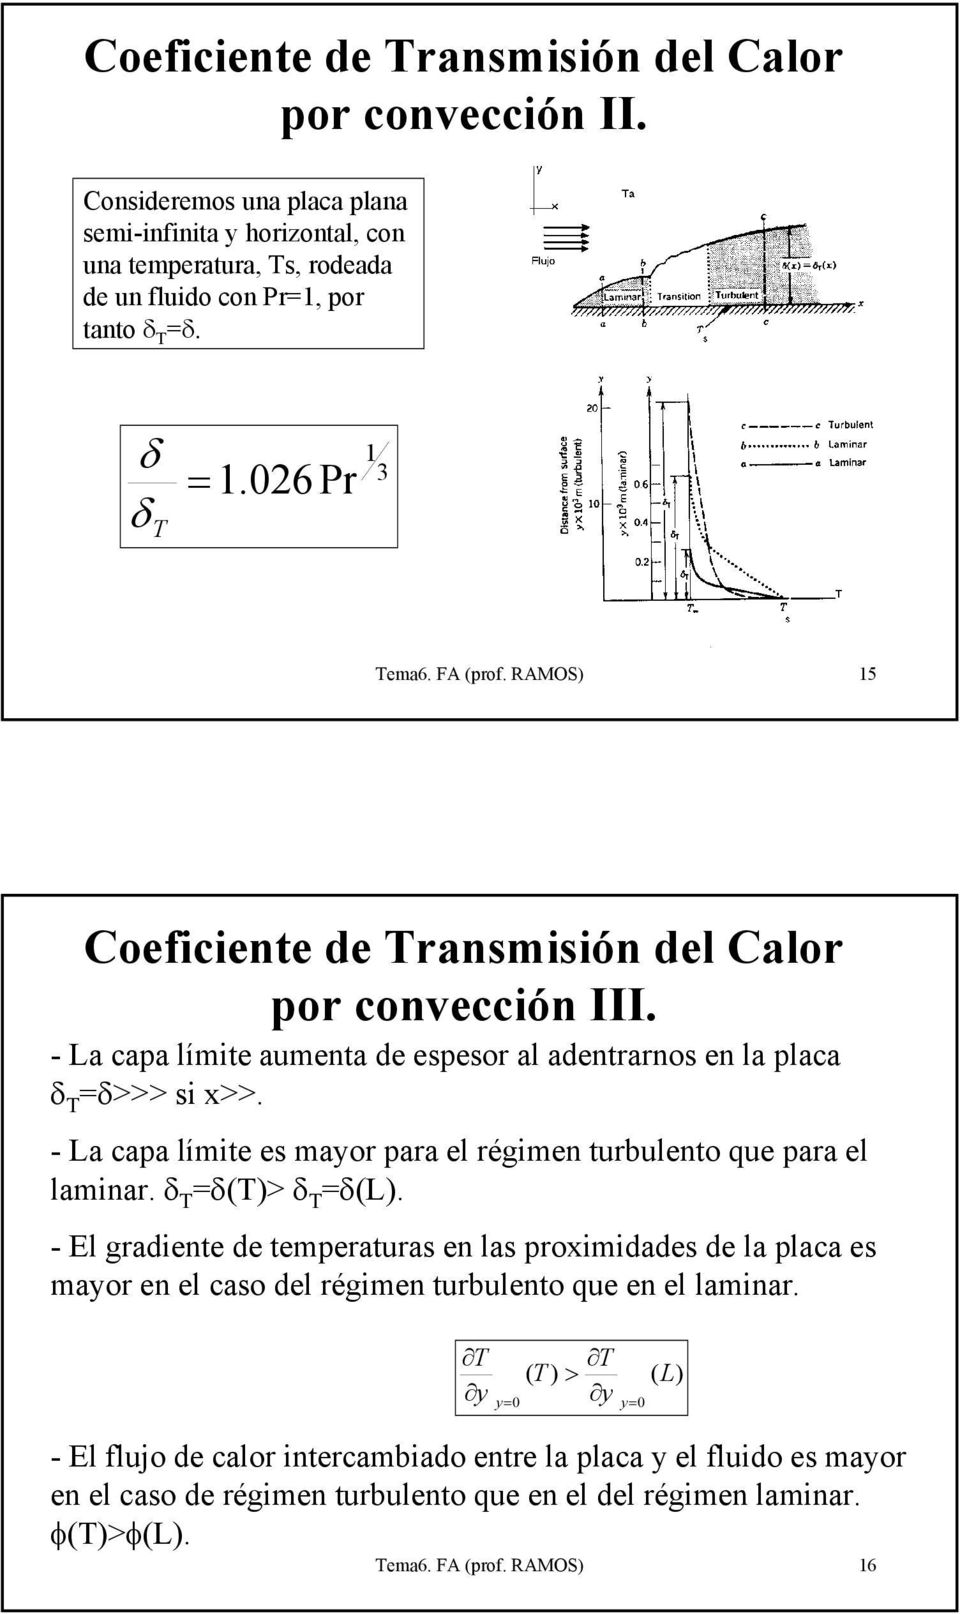 - a capa límite es mayor para el régimen turbulento que para el laminar. δ =δ(> δ =δ(.